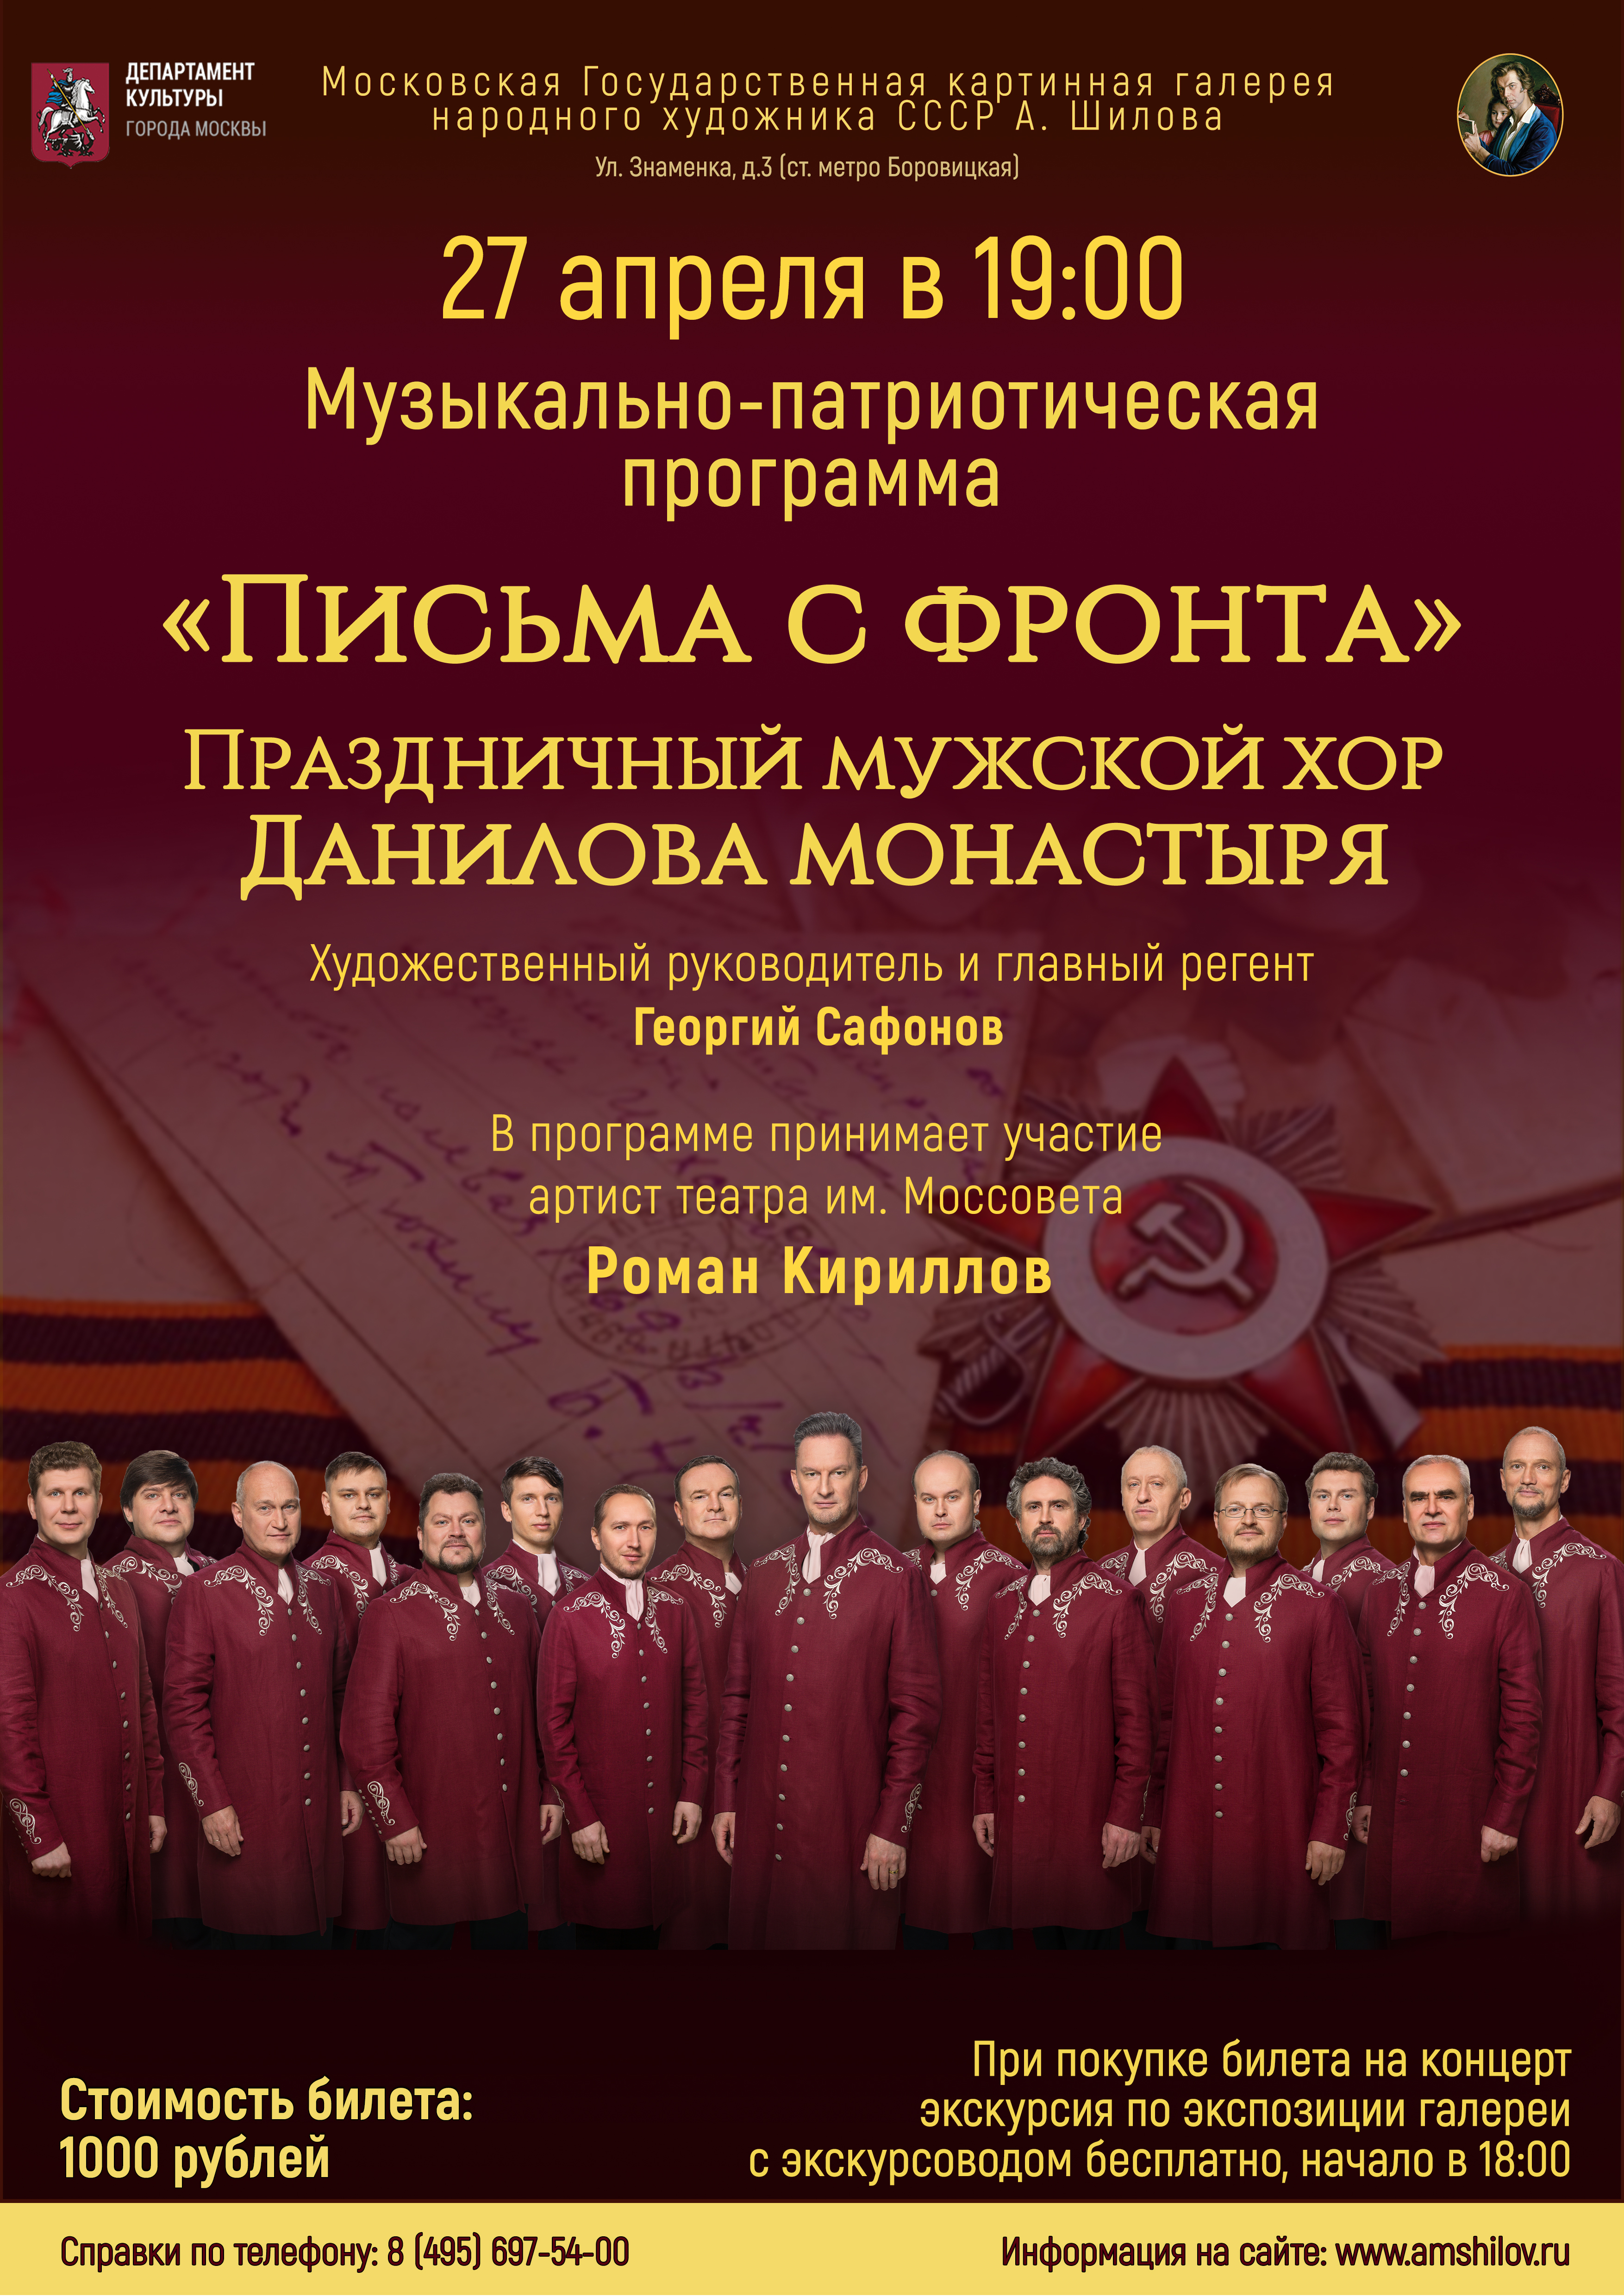 Музыкально-патриотическая программа Праздничного мужского хора Данилова монастыря «Письма с фронта»